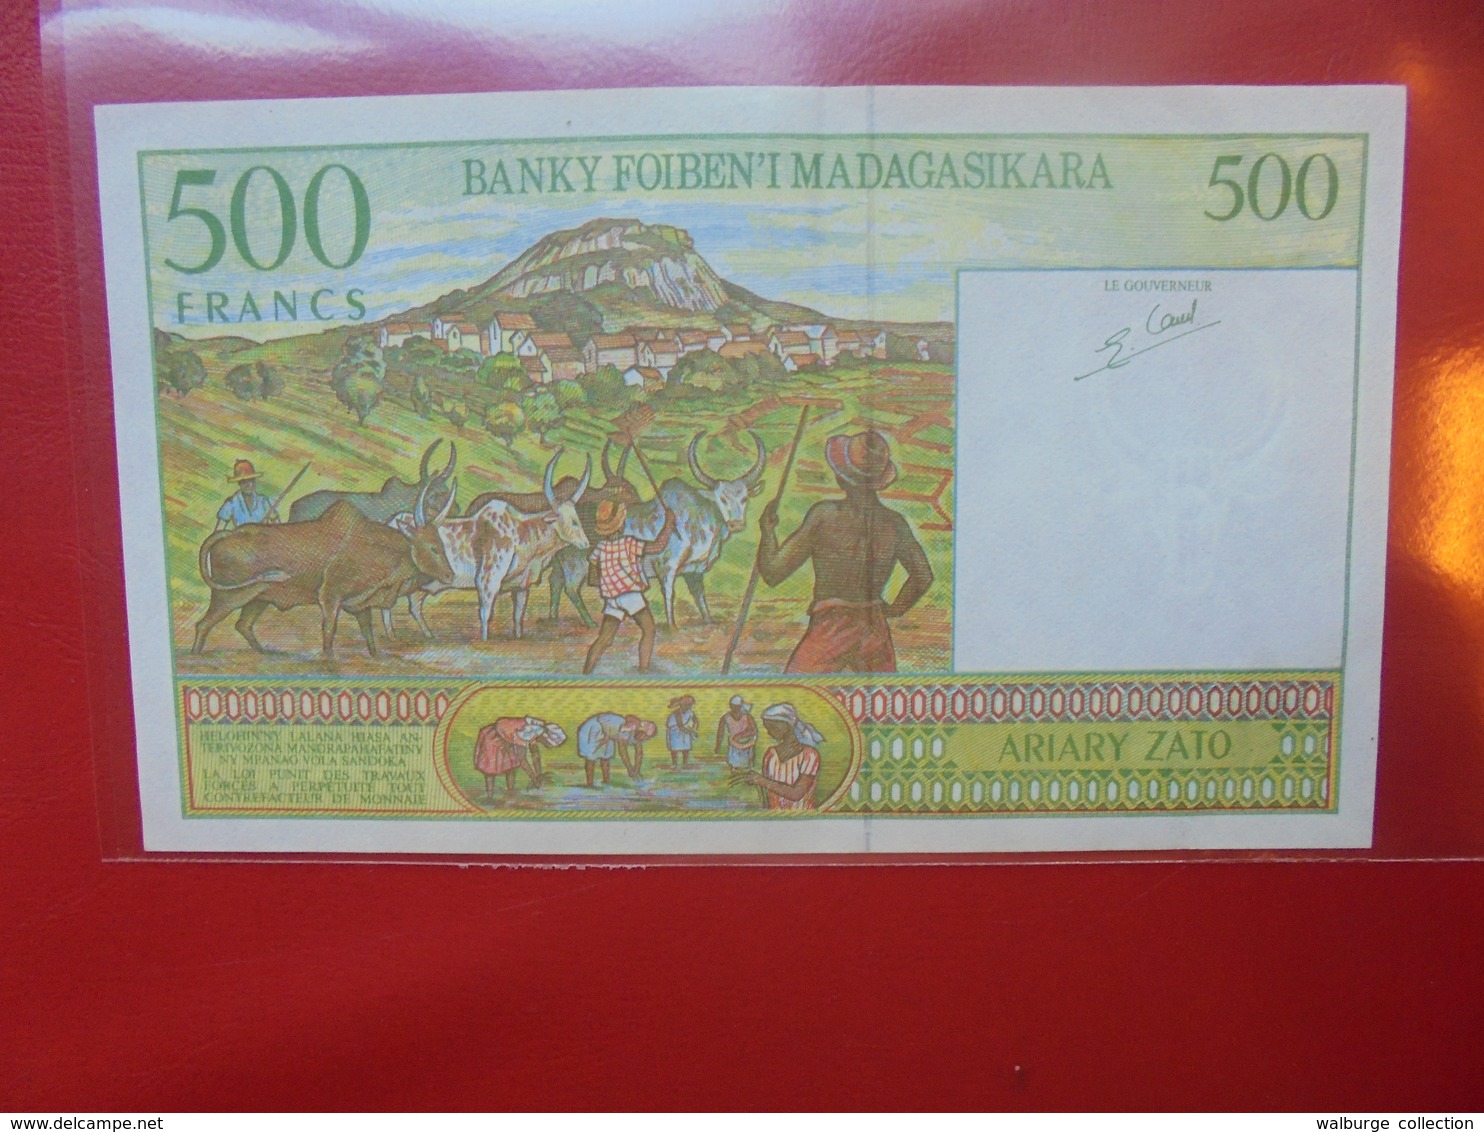 MADAGASCAR 500 FRANCS 1994 PEU CIRCULER (F.1) - Madagascar